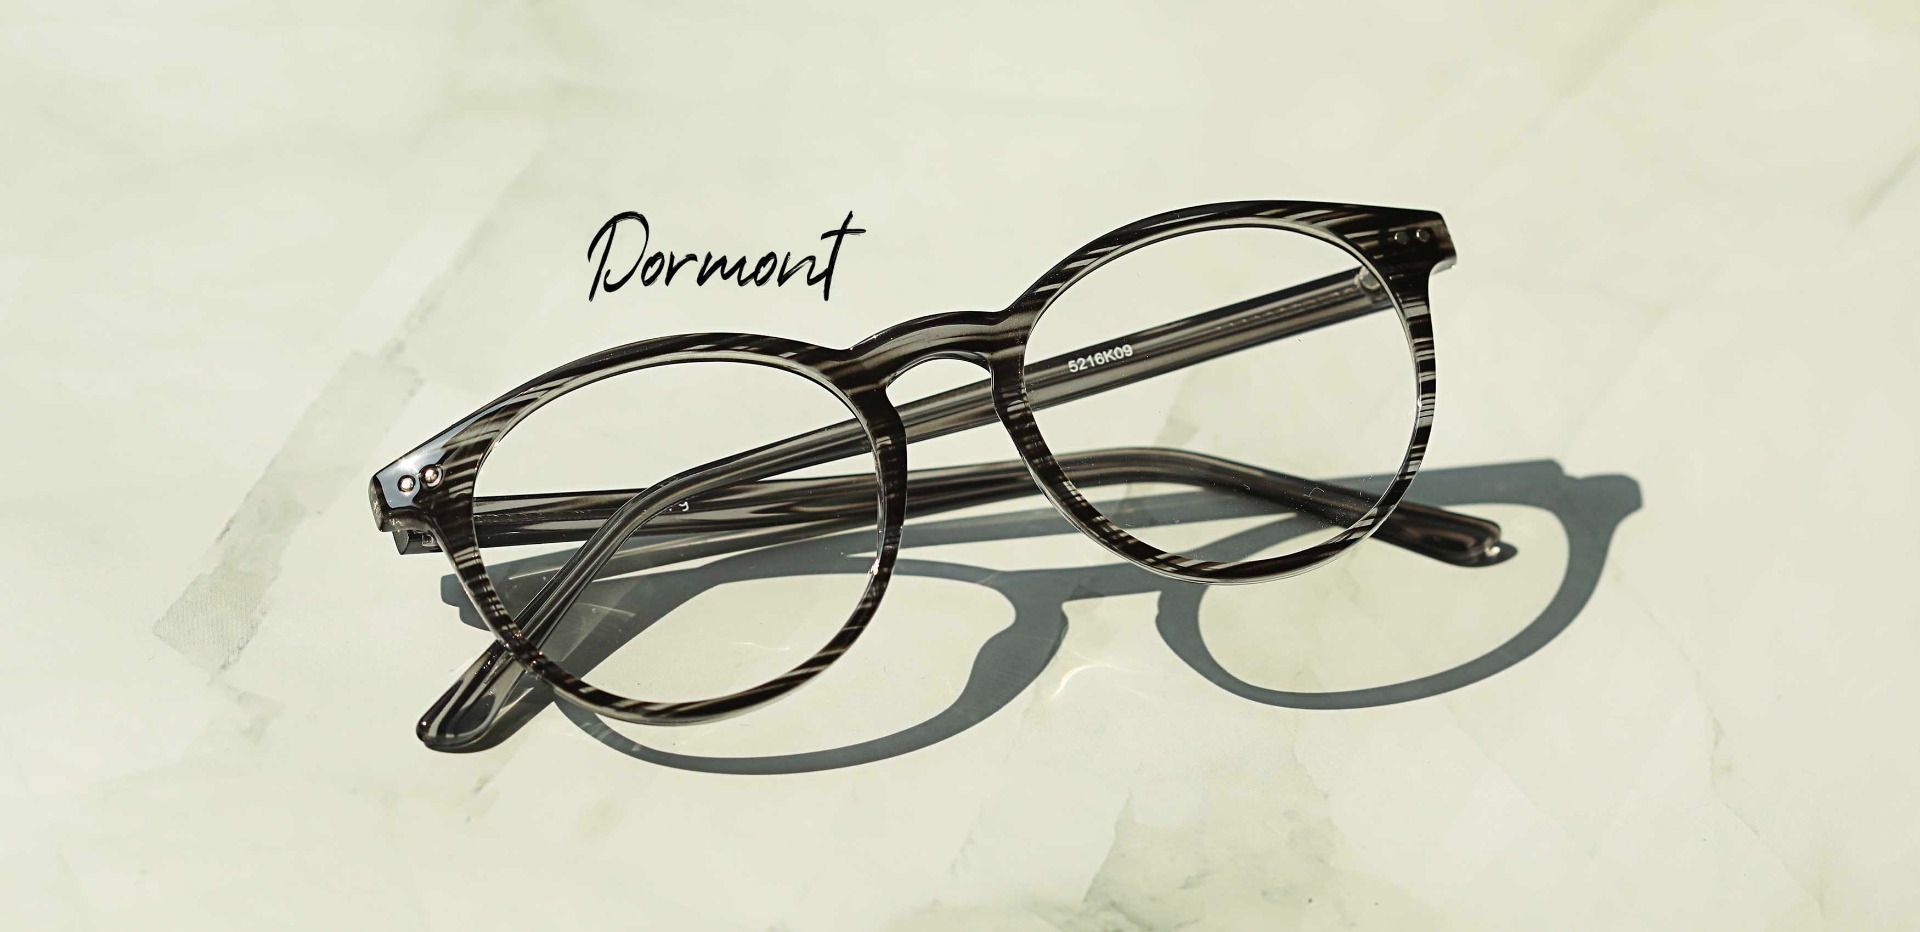 Dormont Round Prescription Glasses - Black